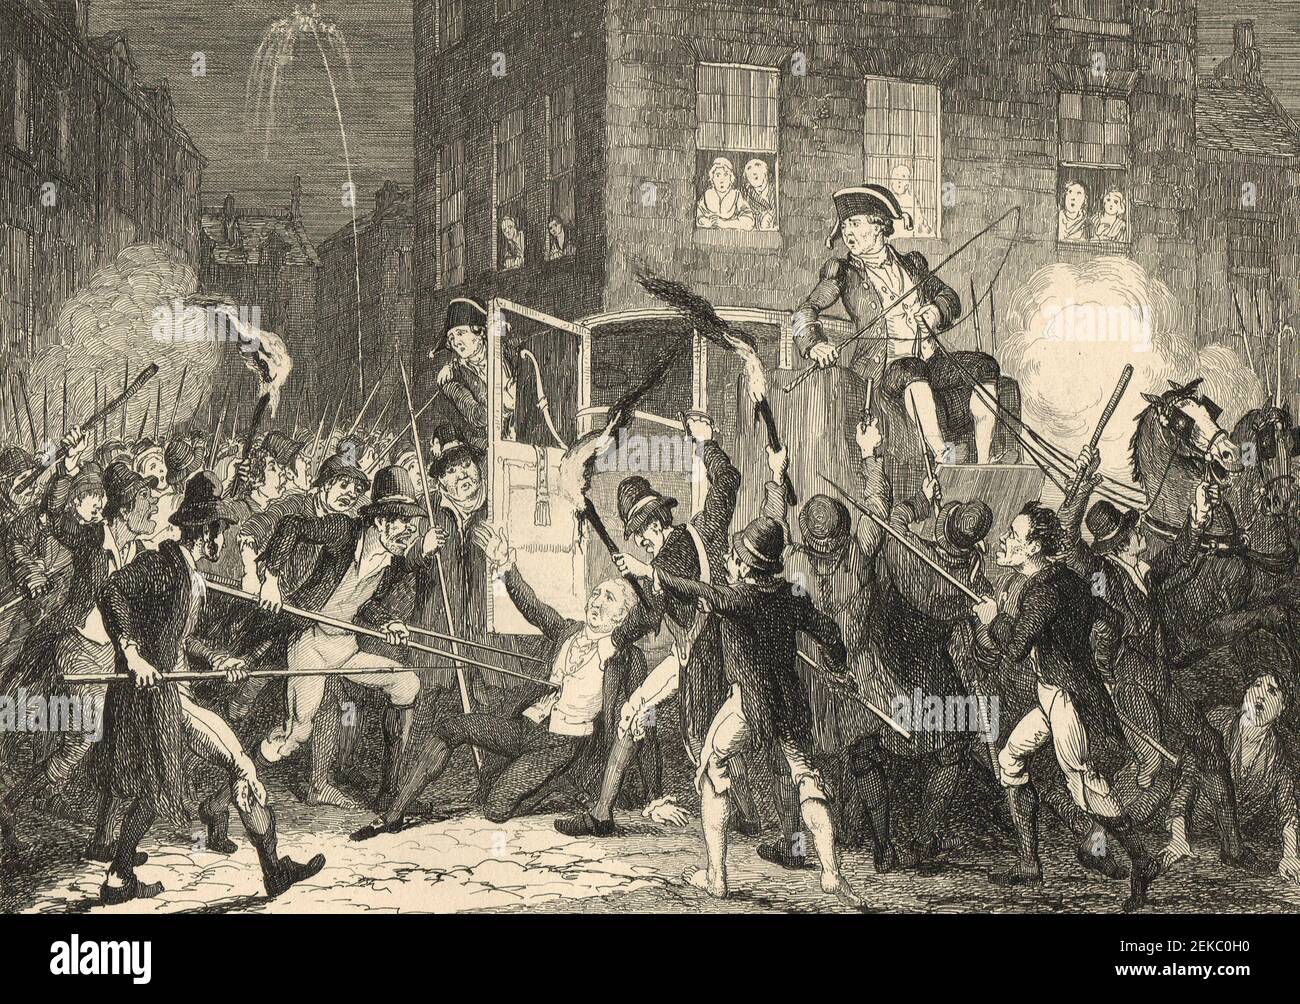 El asesinato de Lord Kilwarden, Lord Chief Justice de Irlanda, 23 de julio de 1803, durante la rebelión irlandesa de 1803 Foto de stock